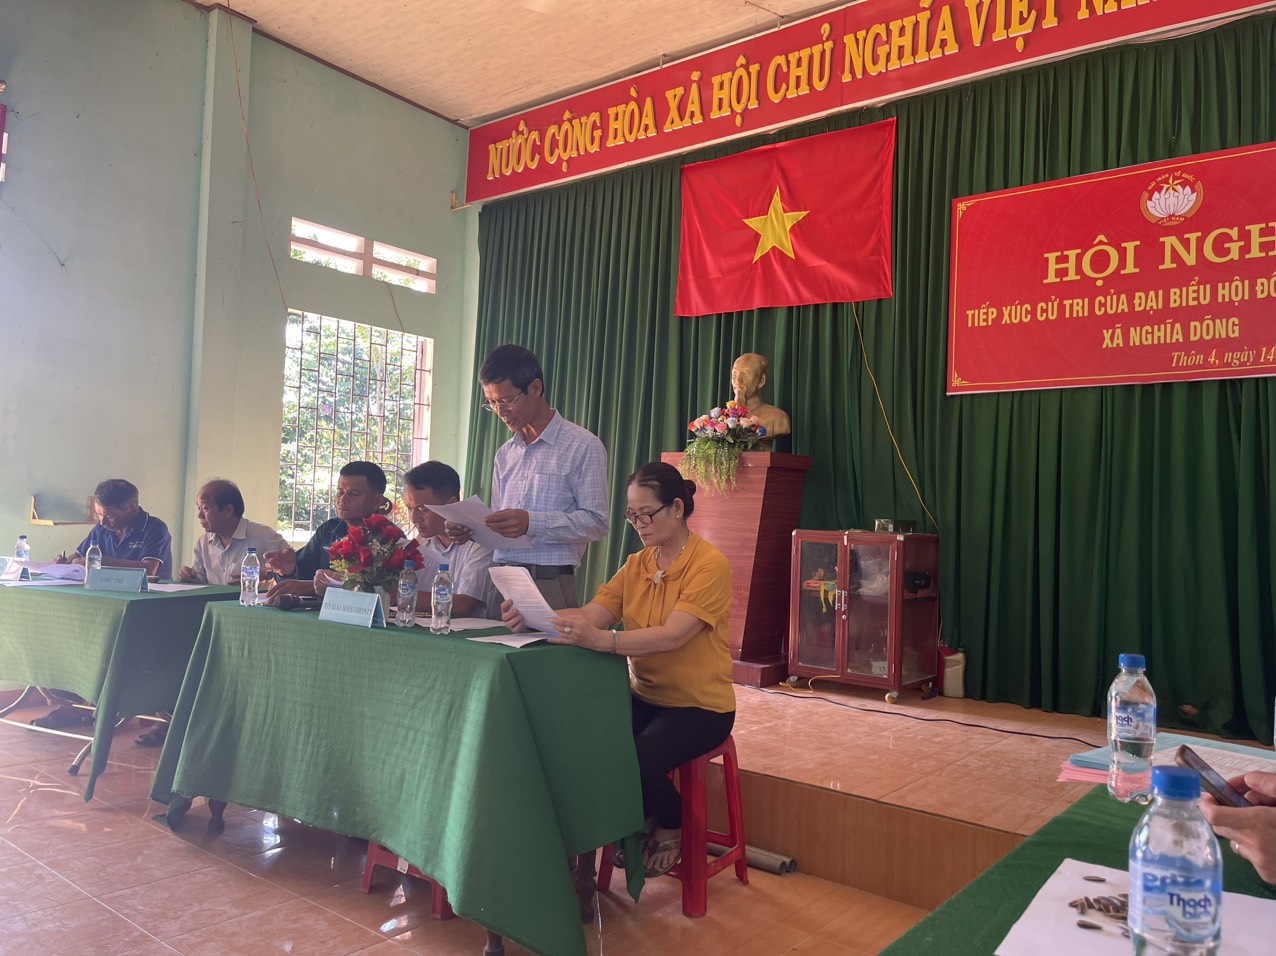 Hội Nghị tiếp xúc cử tri của đại biểu HĐND xã tại điểm sinh hoạt văn hóa 04 thôn trên địa bàn xã Nghĩa Dõng